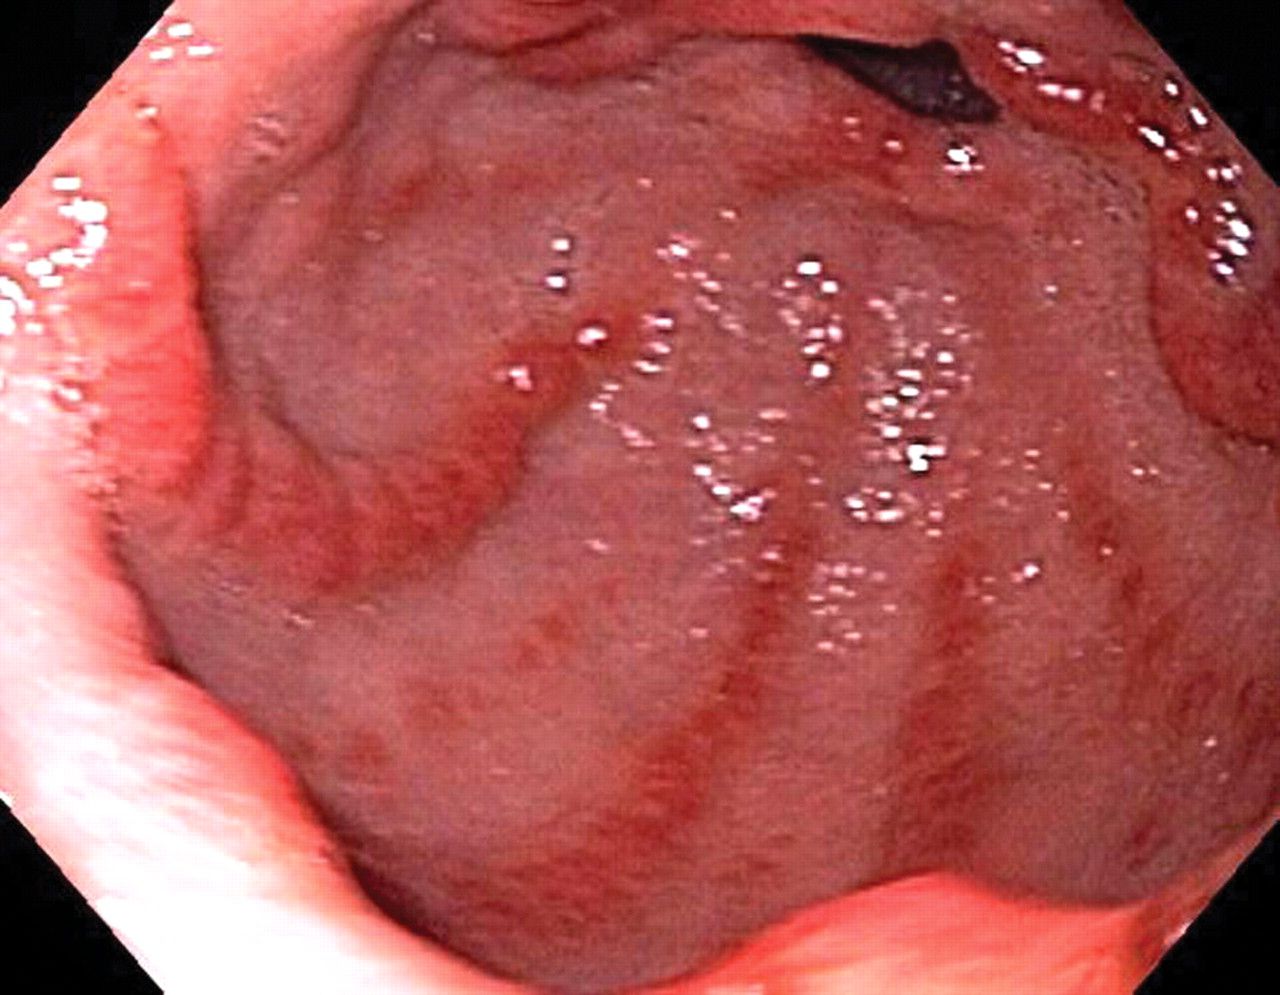 Hemorragia digestiva alta (estómago de sandía) en paciente con esclerodermia limitada (síndrome de CREST)